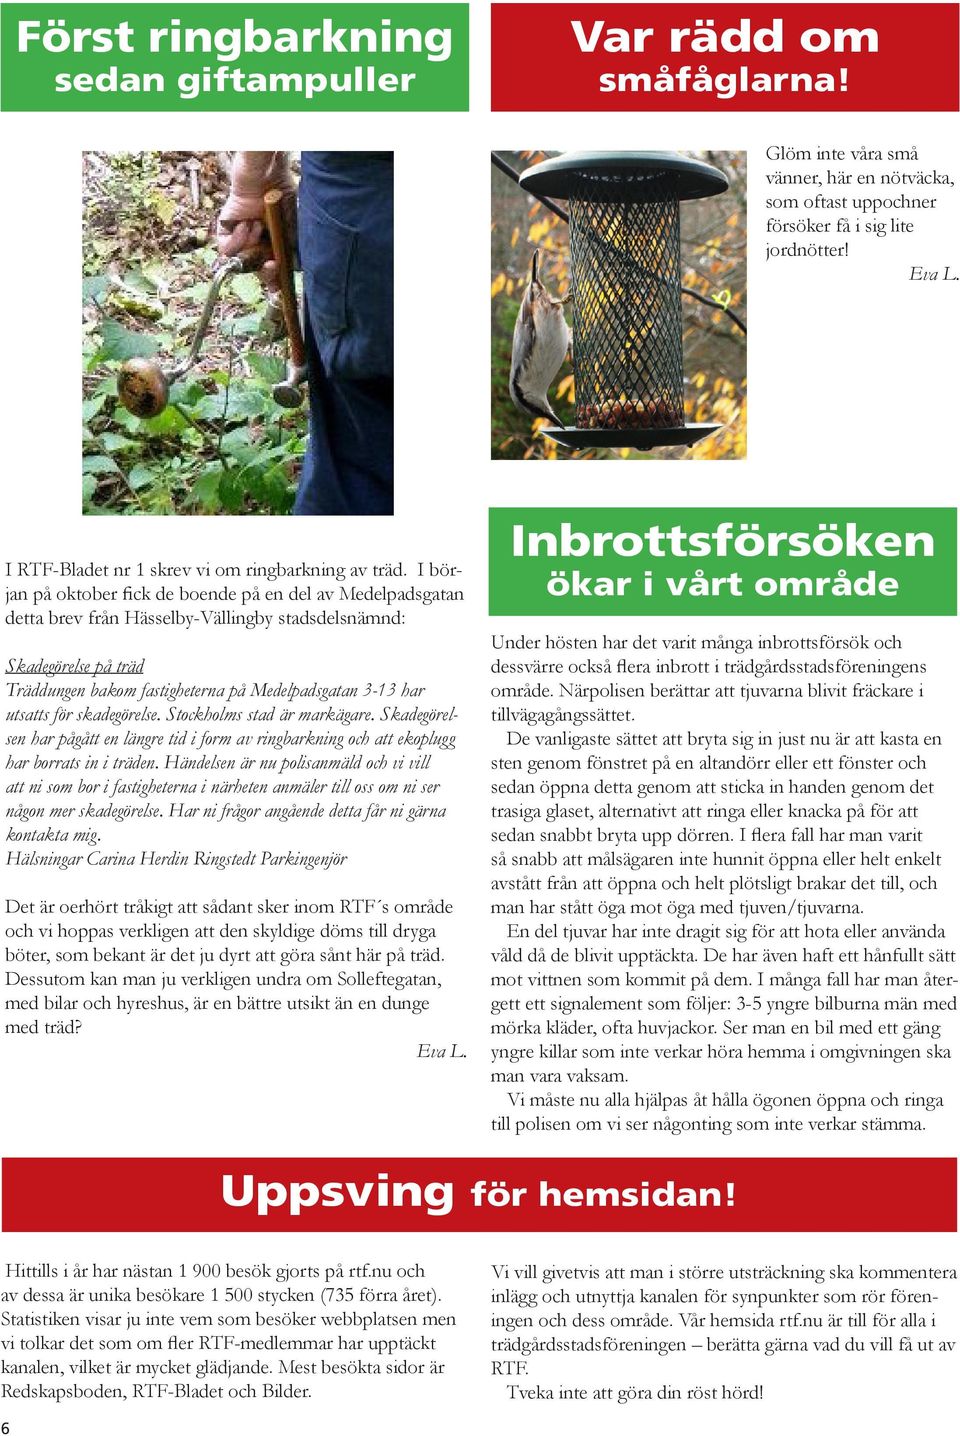 I början på oktober fick de boende på en del av Medelpadsgatan detta brev från Hässelby-Vällingby stadsdelsnämnd: Skadegörelse på träd Träddungen bakom fastigheterna på Medelpadsgatan 3-13 har